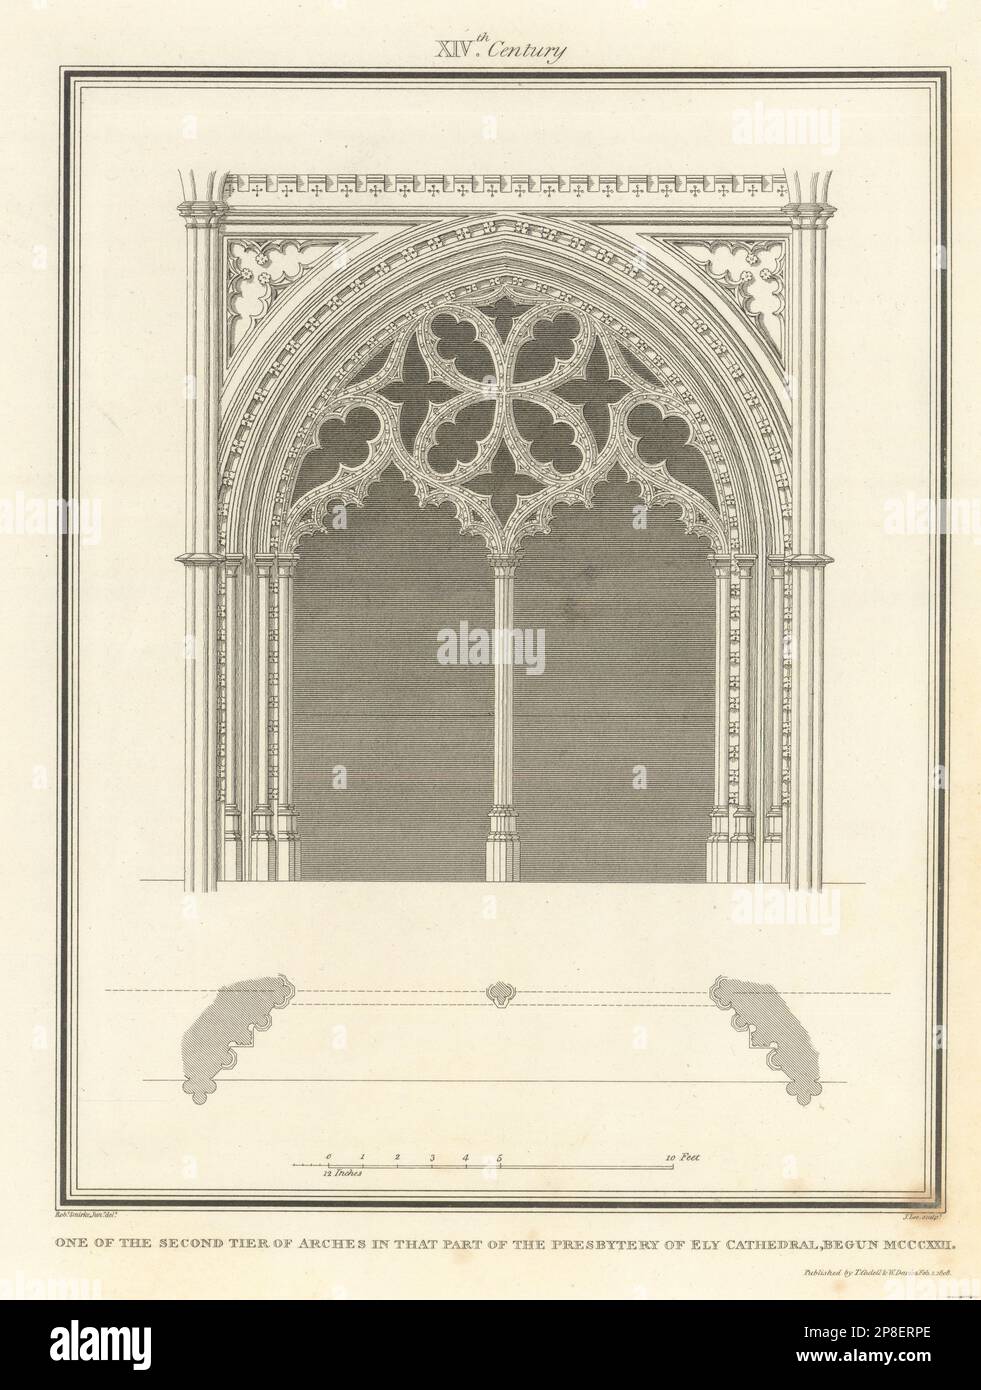 Uno dei due piani di archi nel Presbiterio della Cattedrale di Ely. SMARKE 1810 Foto Stock